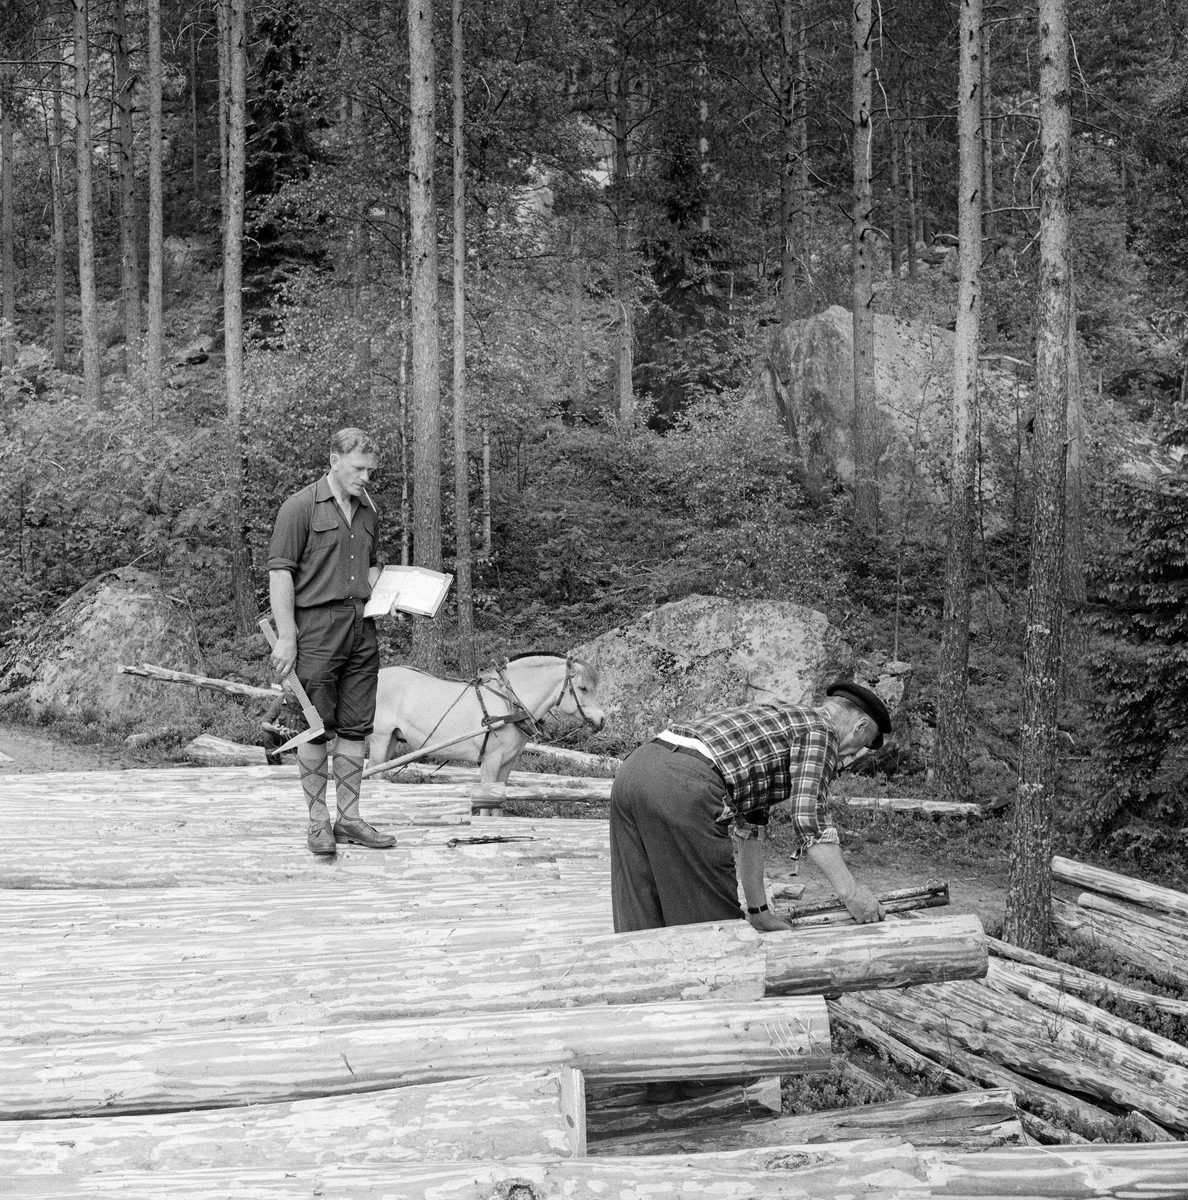 Tømmermåling ved Nidelva i Åmli i Aust-Agder våren 1970.  Her måles barket tømmer på ei strøvelte på et sted der det høvde godt å foreta utislag i vassdraget.  Til høyre ser vi en mann som sto bøyd over en stokkende, muligens for å merke stokken.  Til venstre ser vi tømmermåler Gjermund Homdrom (1928-1995) fra Åmli, som arbeidet for Nidarå tømmermåling.  Han sto på den øverste tømmerfloa med stikkboka i høyre hånd, en skyveklave i venstre hånd og en blyant i munnen.  Bak Homdrom ser vi en hest, en fjording, som ble brukt til å kjøre tømmer fram til velteplassen.  I terrenget i bakgrunnen ser vi furudominert skog på blokkrik mark.